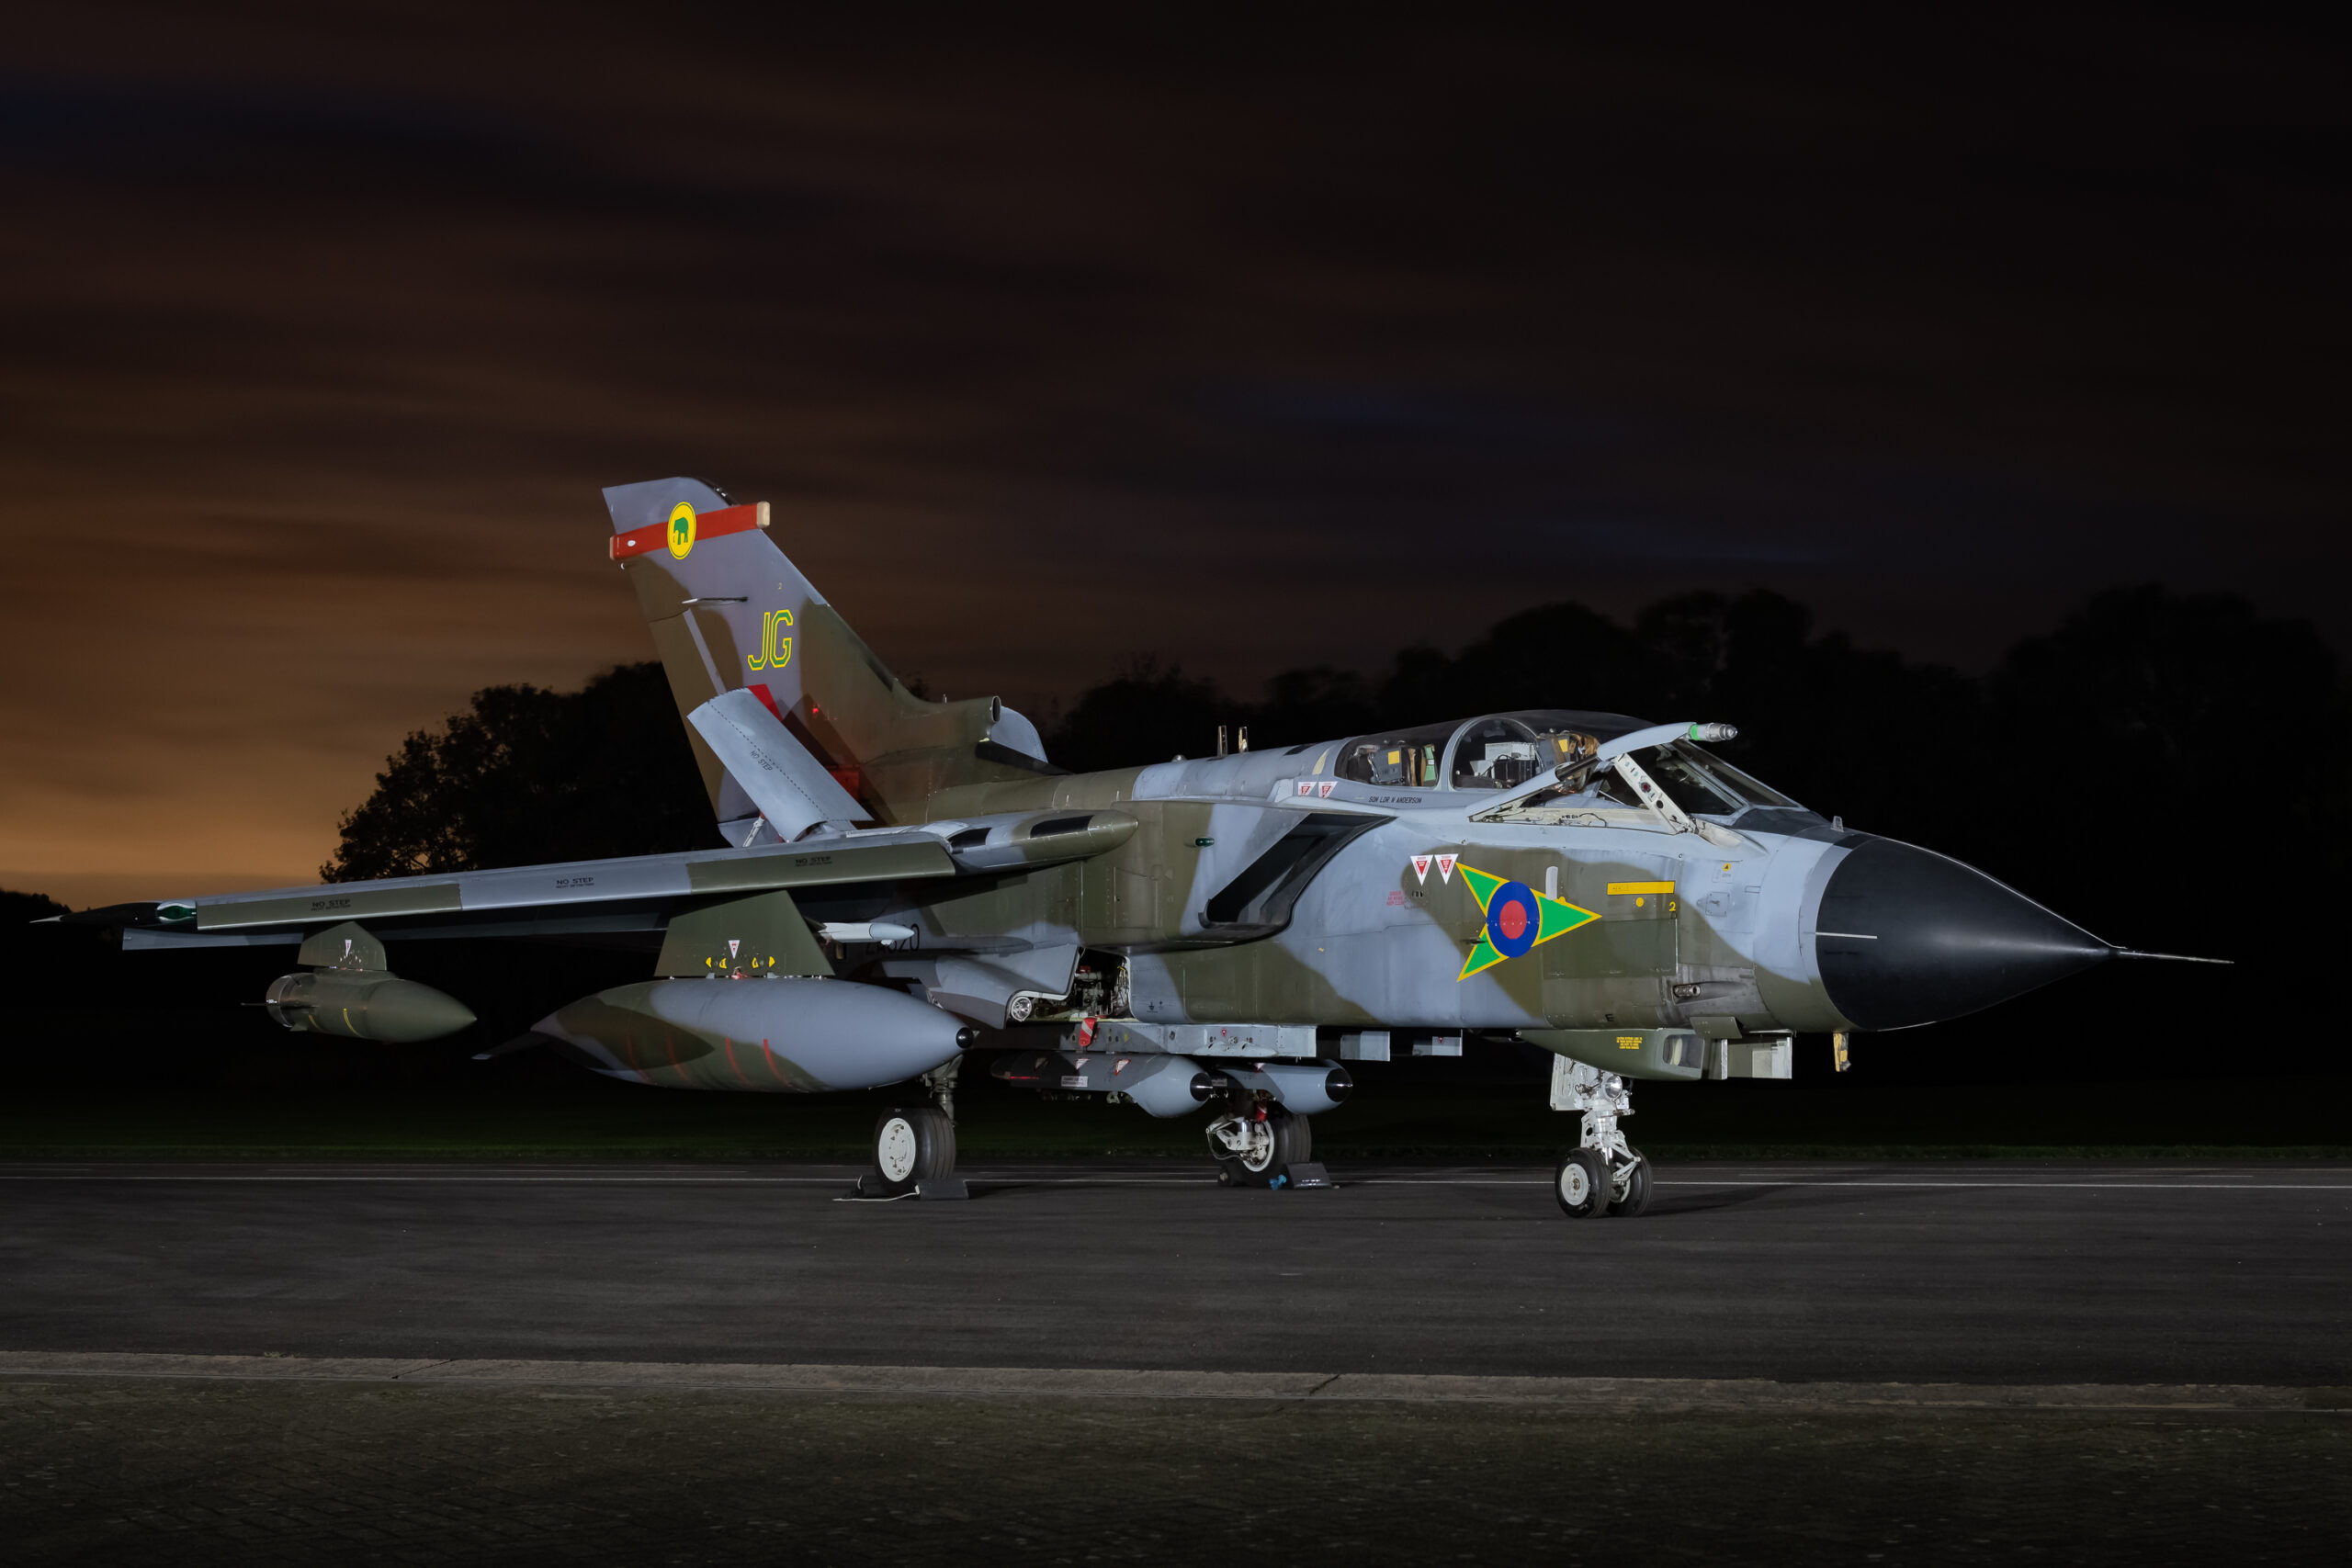 RAF Cosford Nightshoot 3